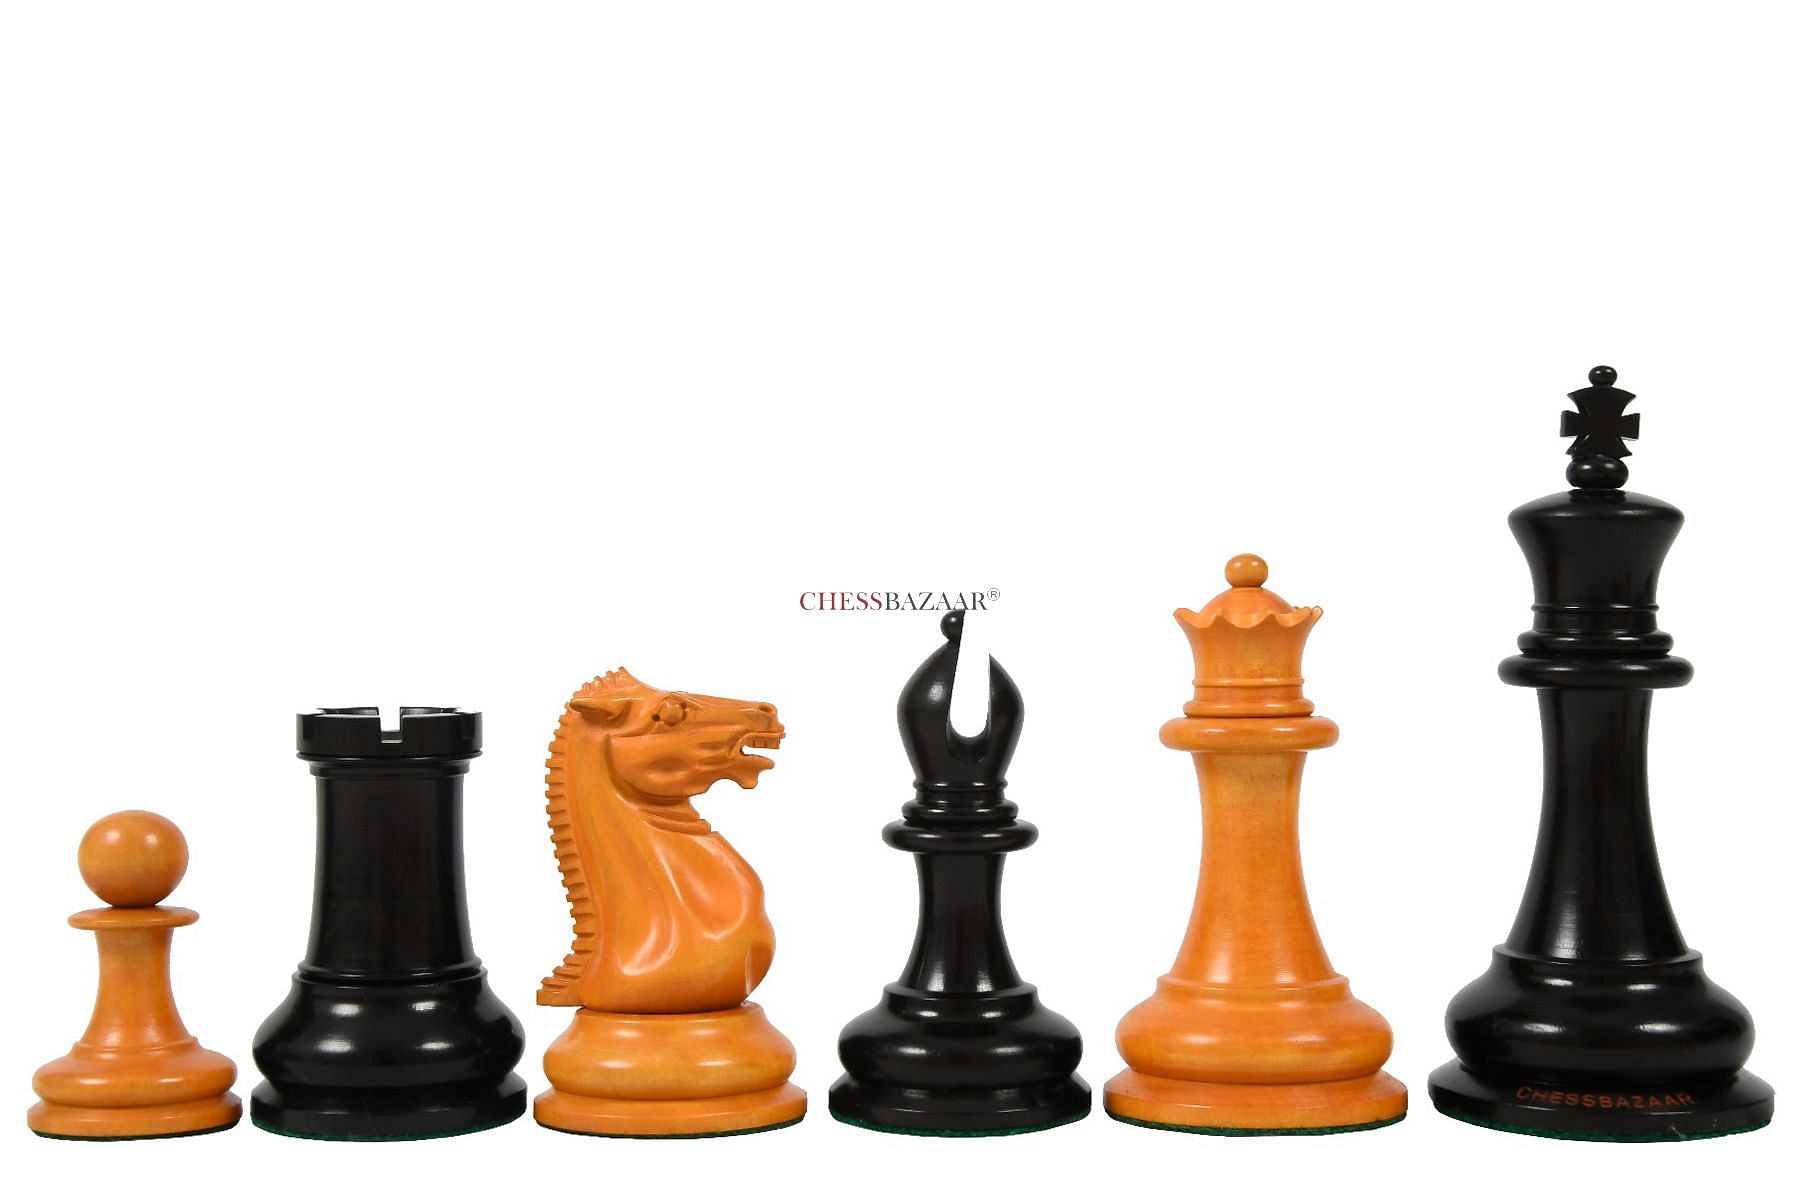 4.6″ Antique Pre-Staunton English Chess Pieces Only set -Camel